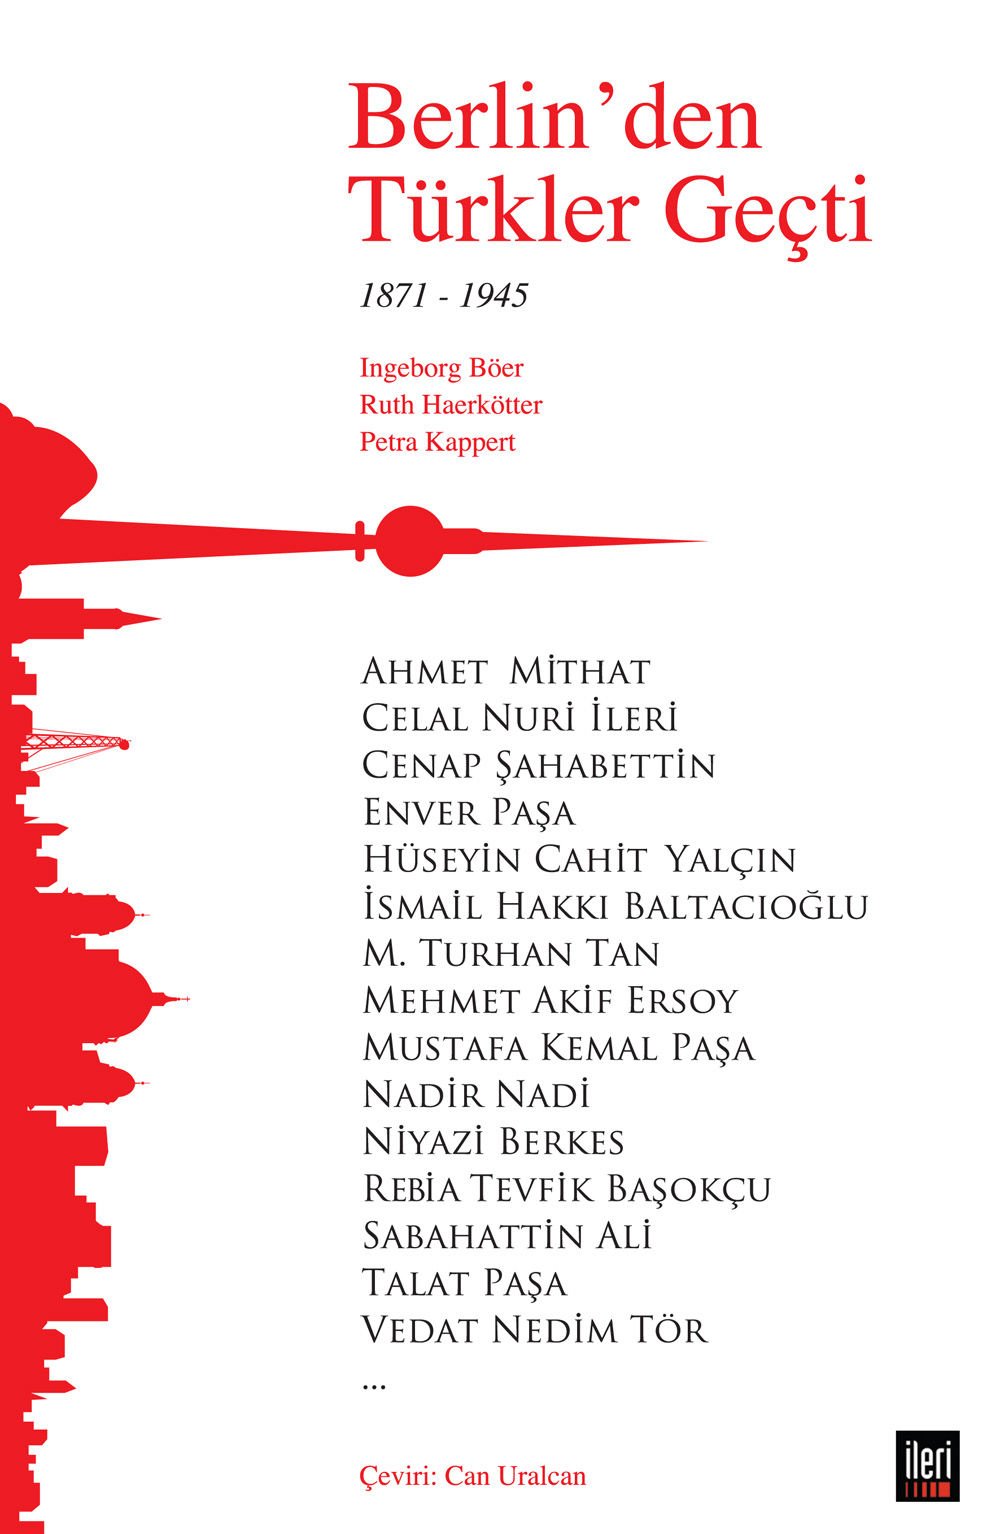 Berlin'den Türkler Geçti (1871-1945)